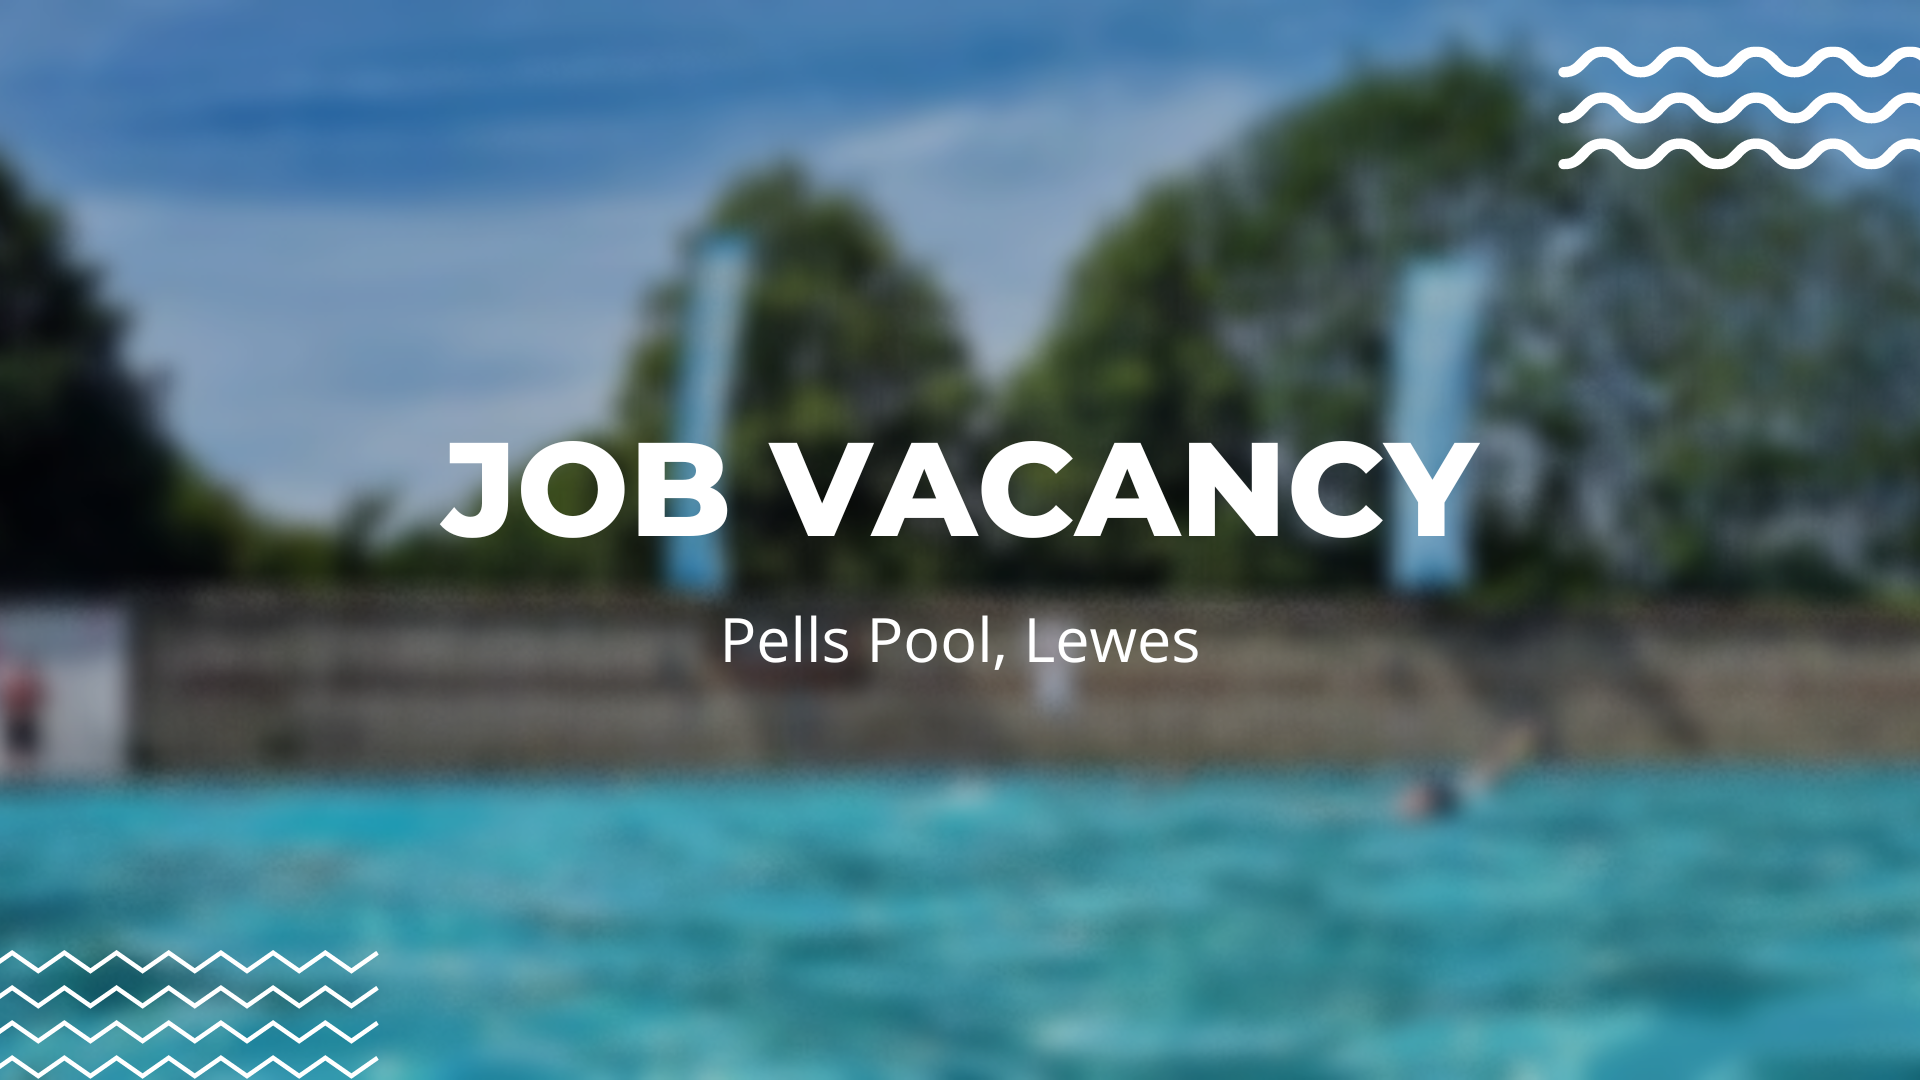 Job Vacancy, Pells Pool